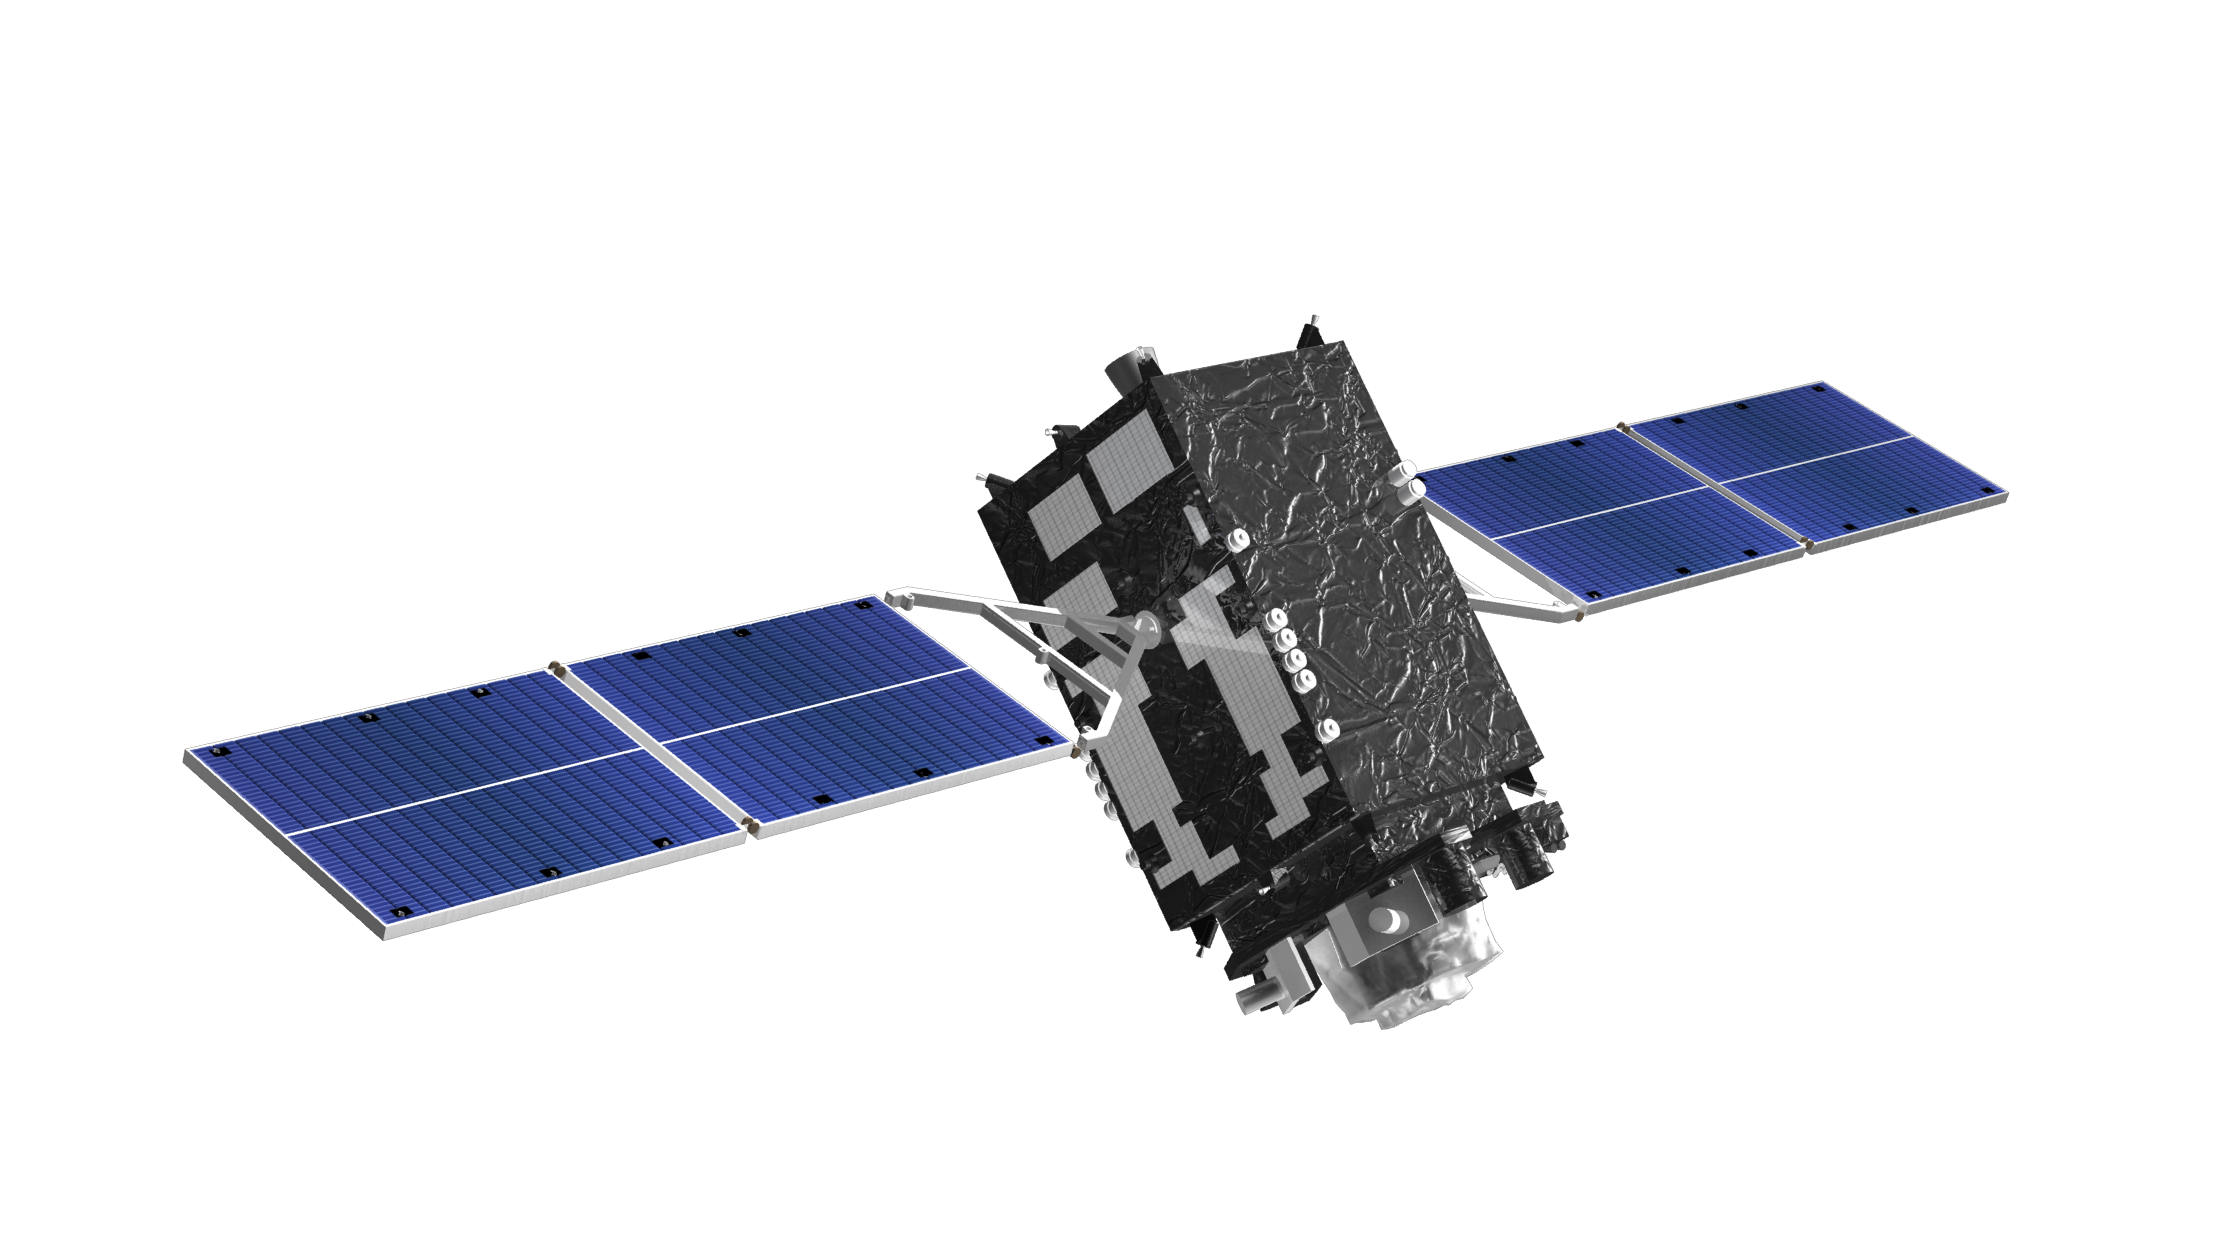 Lk aoglonass ru. QZSS (quasi-Zenith Satellite System). Космический аппарат "Гео-ИК" 2. Satellite 2 ГЛОНАСС. Японская навигационная система quasi-Zenith Satellite System (QZSS).